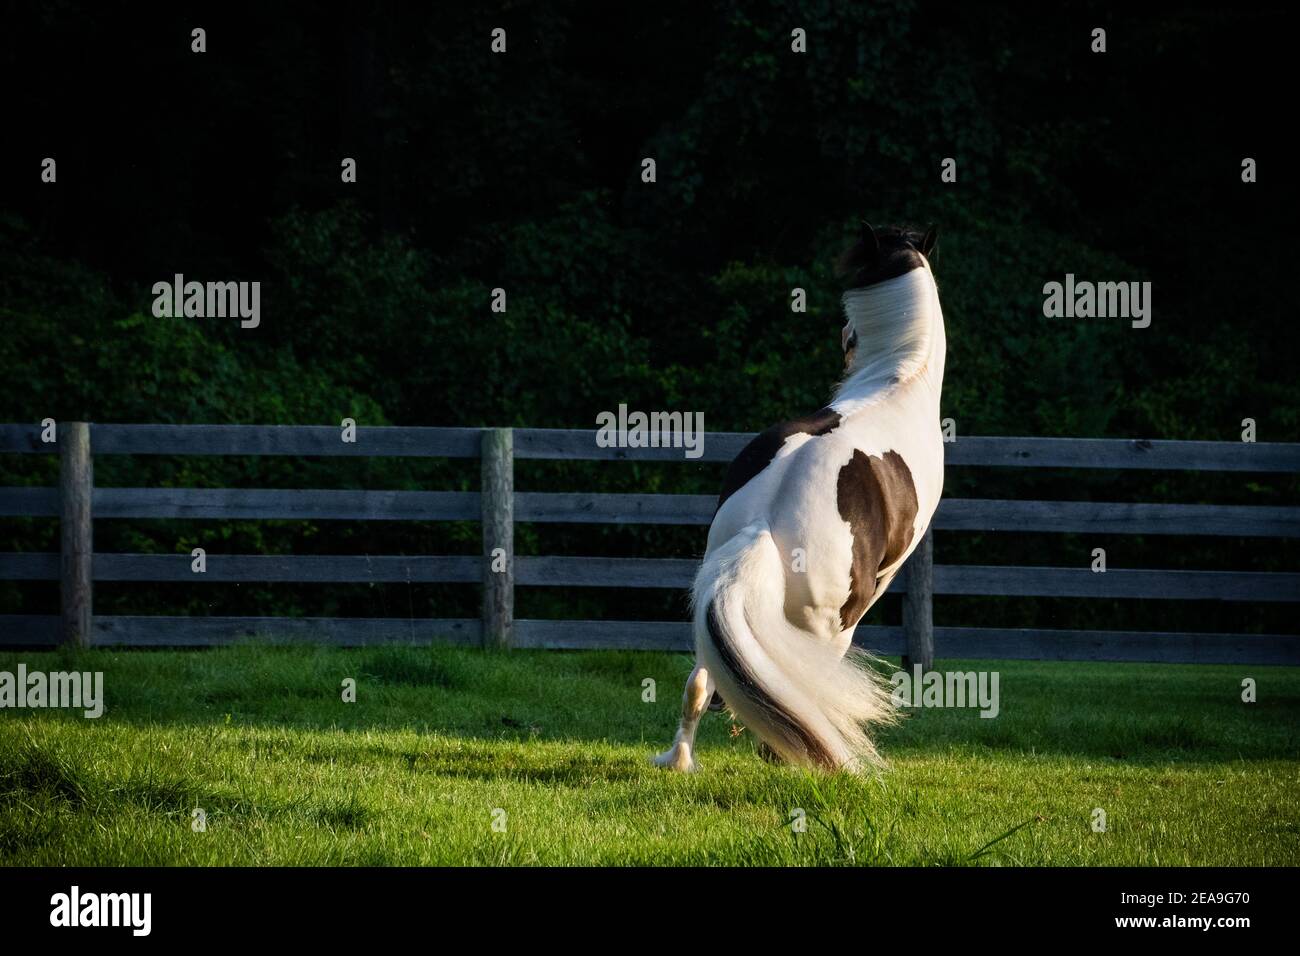 Ein schwarz-weißes zigeunerpferd steht auf seinen Hinterbeinen, bevor es eine scharfe Wendung in einer grünen Weide macht. Es ist zurück wird auf die Kamera gedreht. Stockfoto